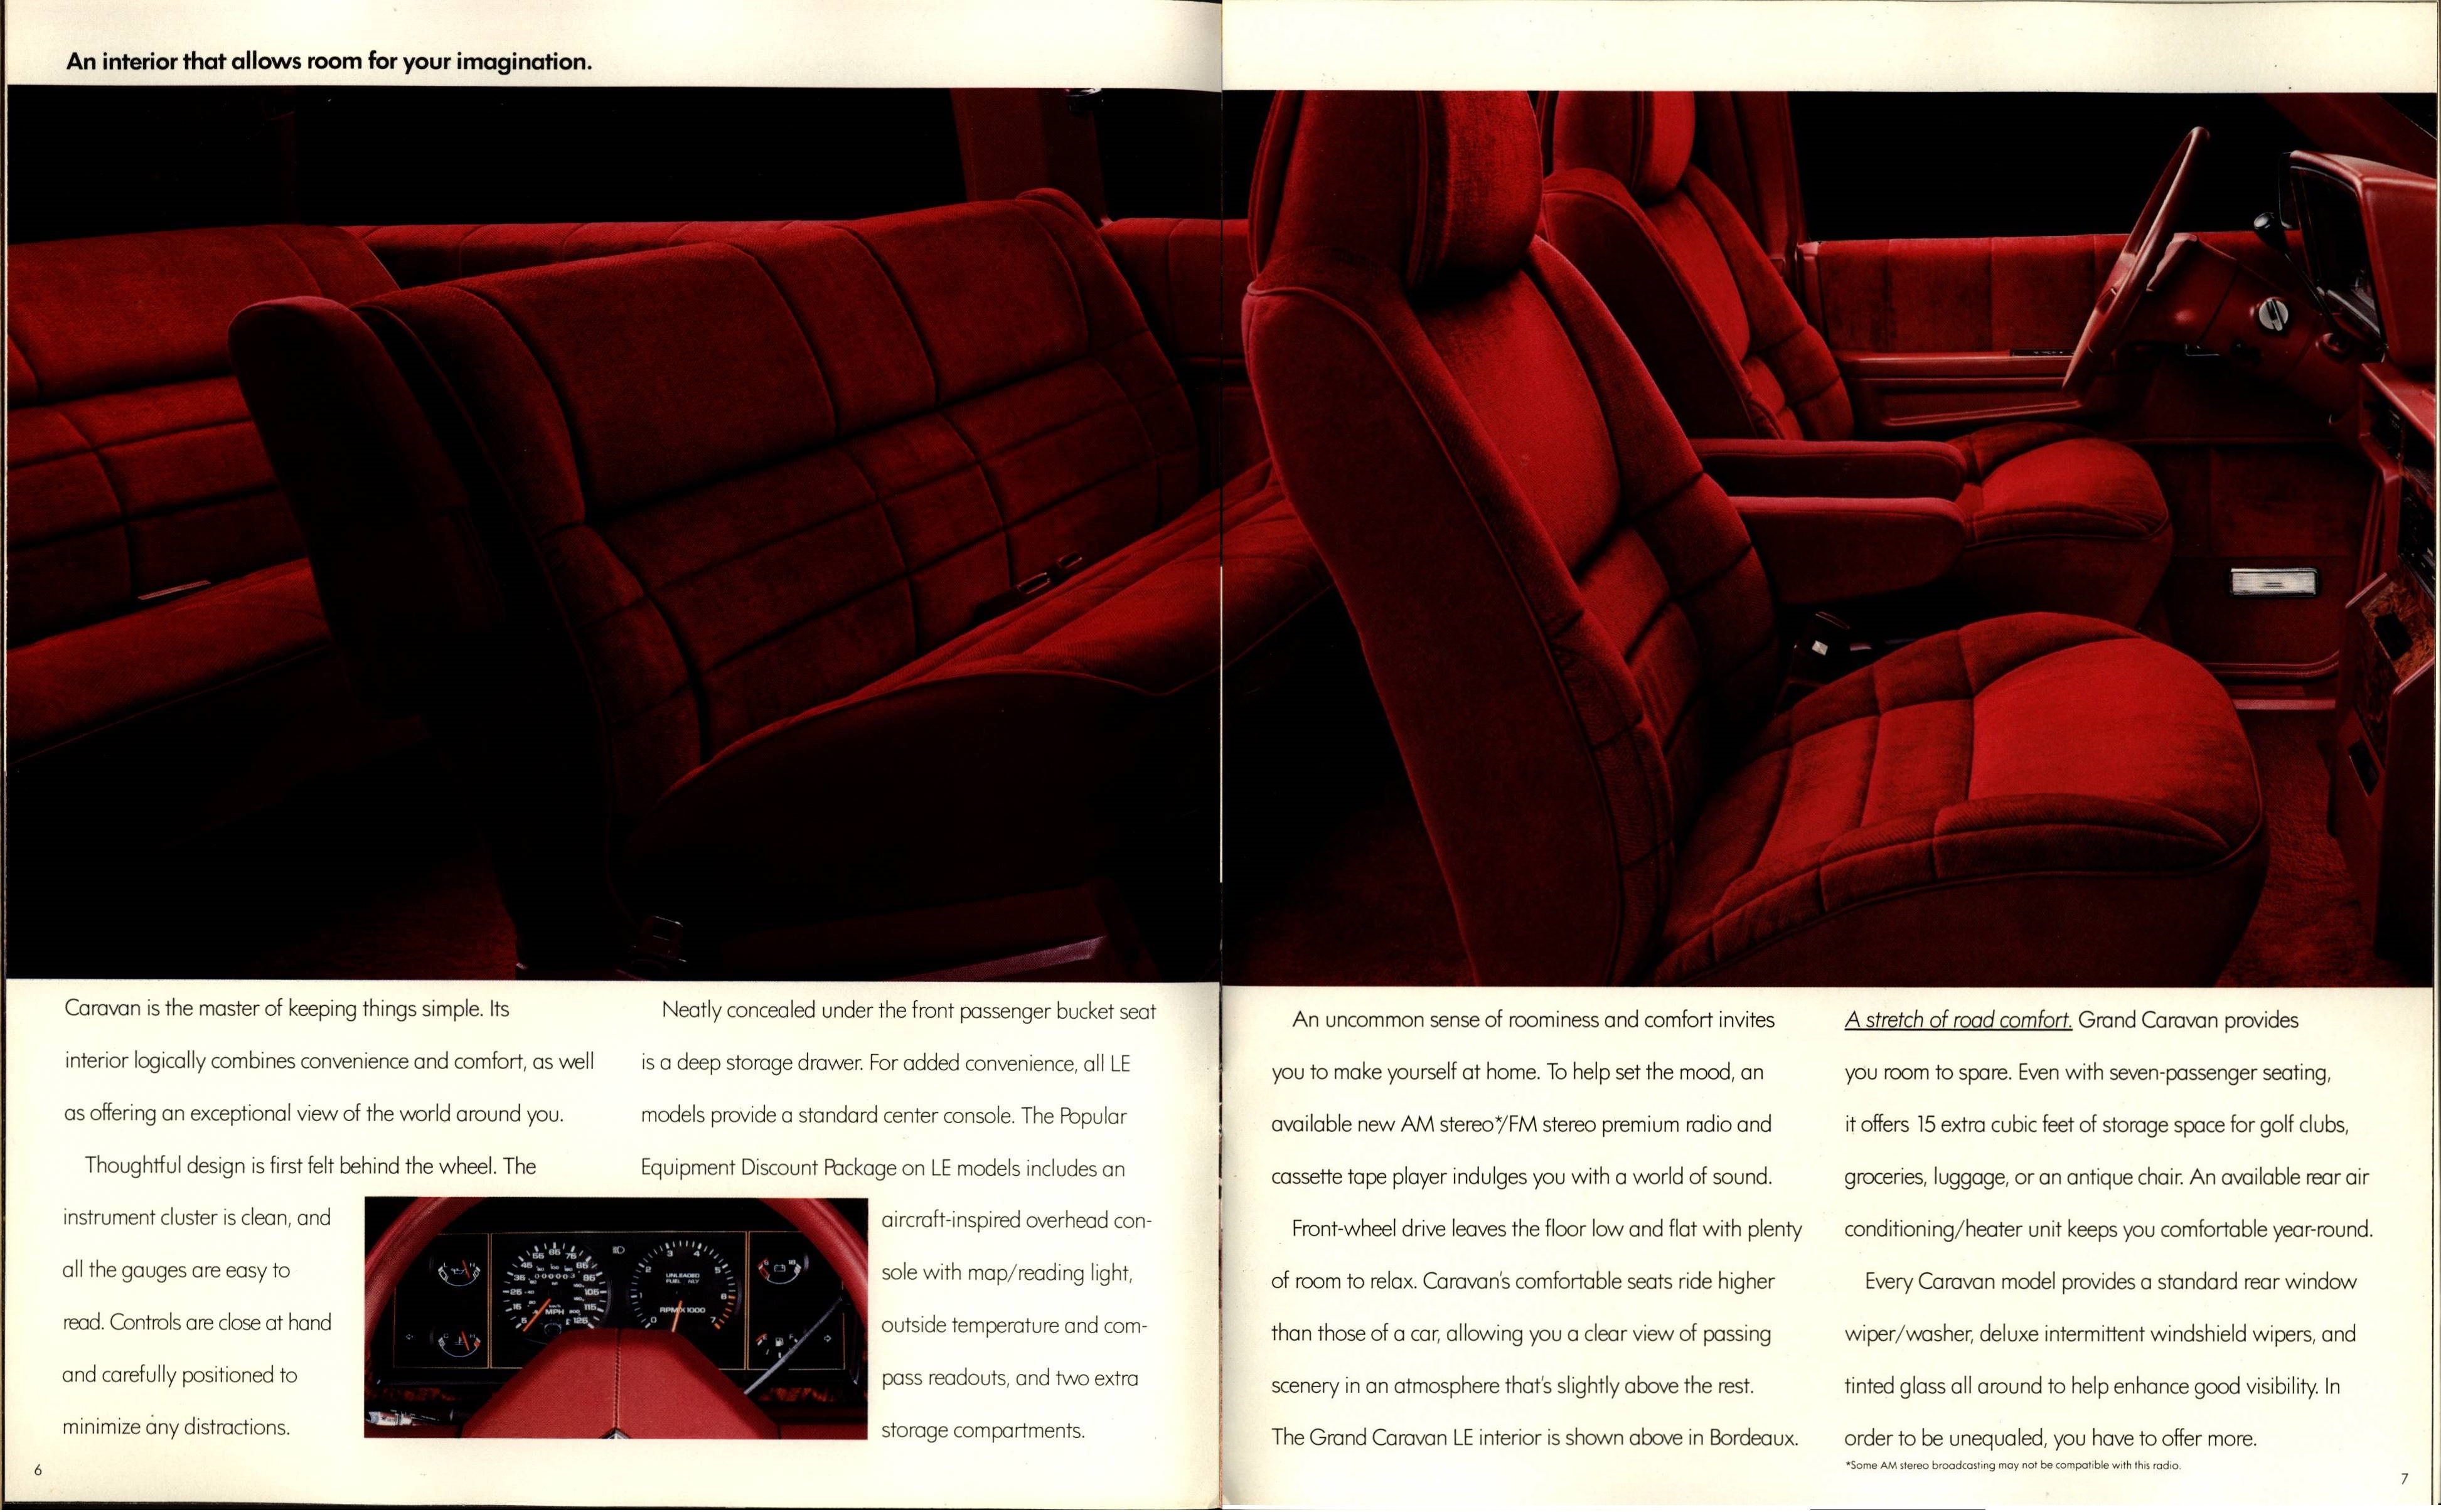 1988 Dodge Caravan Brochure 06-07